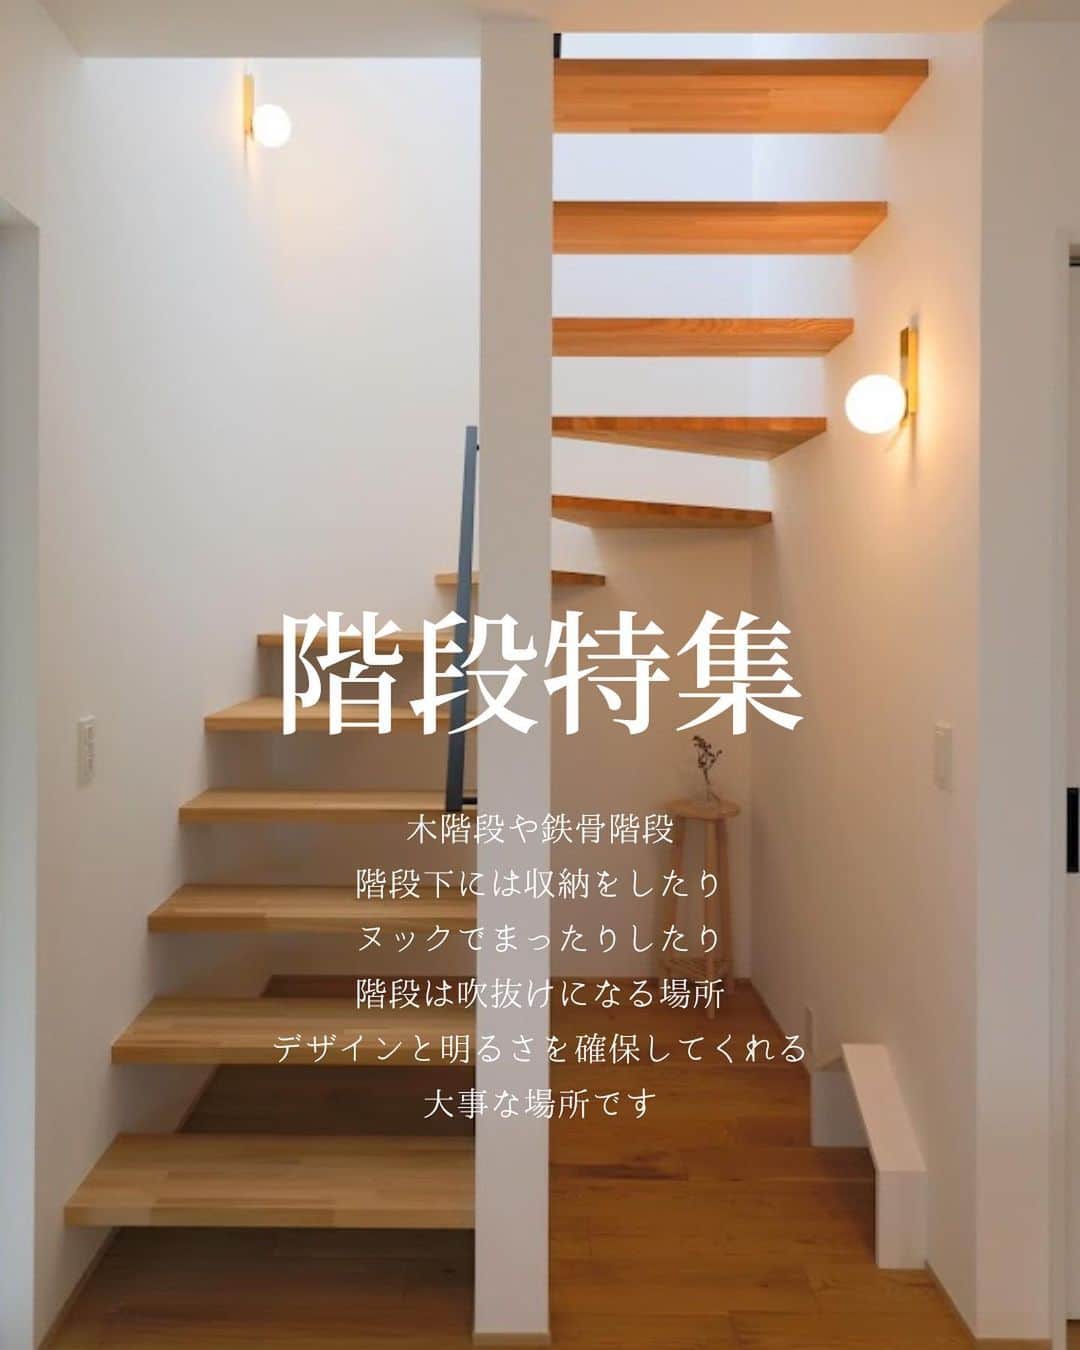 ナガタ建設のインスタグラム：「福岡県太宰府市にあるナガタ建設のながたのいえ。 木階段や鉄骨階段、 階段下には収納をしたり、 ヌックでまったりしたり、 階段は吹き抜けになる場所、 デザインと明るさを確保してくれる 大事な場所です。  #階段 #階段下収納  #鉄骨階段 #スケルトン階段 #階段手すり #ヌック  ☞@nagatanoie フォローやいいね！して頂けると凄く喜びます😁 ・ ｰｰｰｰｰｰｰｰｰｰｰｰｰｰｰｰｰｰｰｰｰｰｰｰｰｰｰｰｰｰ #施工事例  他の写真はこちら...☞@nagatanoie ｰｰｰｰｰｰｰｰｰｰｰｰｰｰｰｰｰｰｰｰｰｰｰｰｰｰｰｰｰｰ ・ #ナガタ建設 は#福岡 県#太宰府市 にて70年前に製材所から始めた#工務店 です🏠 ・ 『 #ながたのいえ 』 ・ #暮らし から#デザイン する#家づくり を提案する私たちの家は ・ 『太宰府でアナタらしさをきづく家』 をテーマに#新築 #注文住宅 #マイホーム  #工務店だからつくれる家 をお客様と一緒に作ります😆 ・ ながたのいえのお客様はこんな人たち ▷▷▷ #家具 好き #インテリア 好き #コーヒー好き  #かっこいい家 #おしゃれな家 好き #暮らしを楽しむ  #シンプルライフ  #家族好き ・ ※ナガタ建設では、メンテナンスのことも考慮し、施工エリアを太宰府市の本社から車で30分圏内と限定させて頂いておりますm(__)m 施工エリア外のお客様については、個別対応となりますので、ご相談下さい。 ・ #house #myhomestyle」